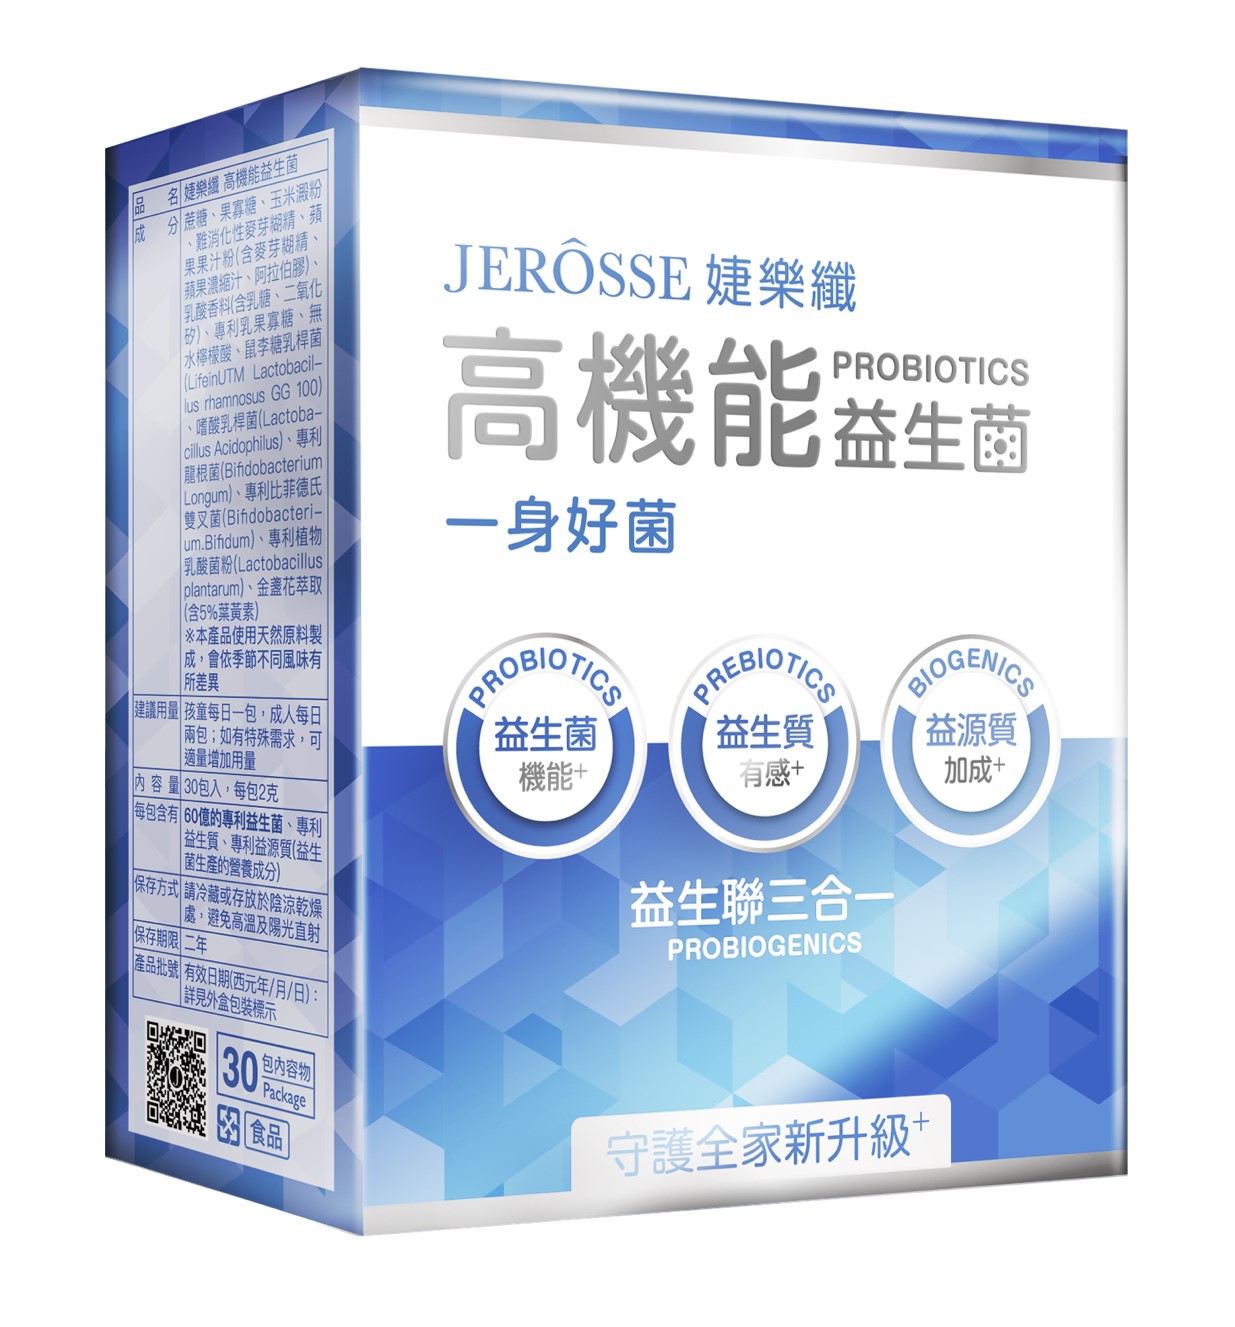 【貨到付款】JEROSSE 婕樂纖 高機能益生菌 纖纖飲 爆纖錠 纖酵宿 6期0利率 三盒均價$1100